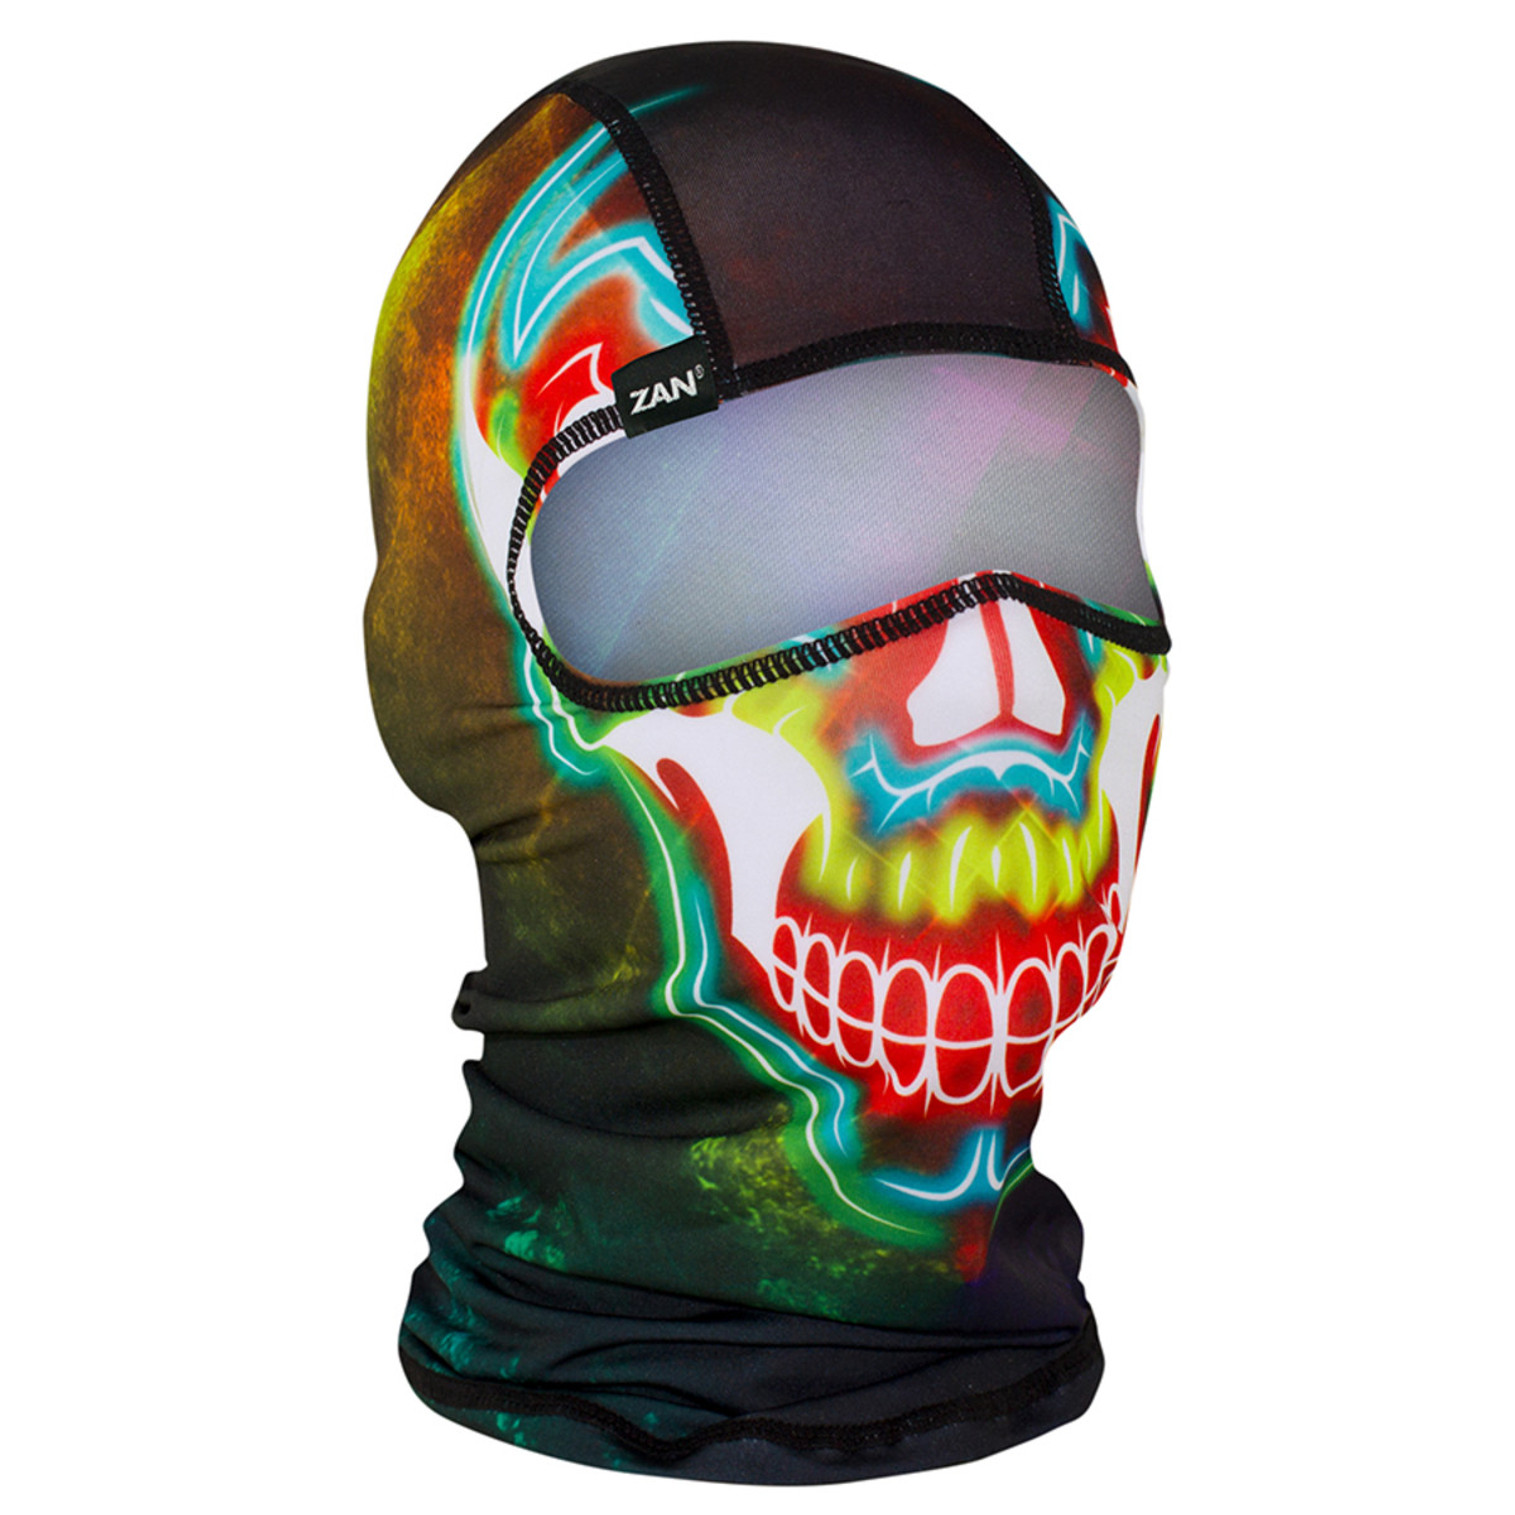 ZAN Headgear Balaclava - Electric Skull